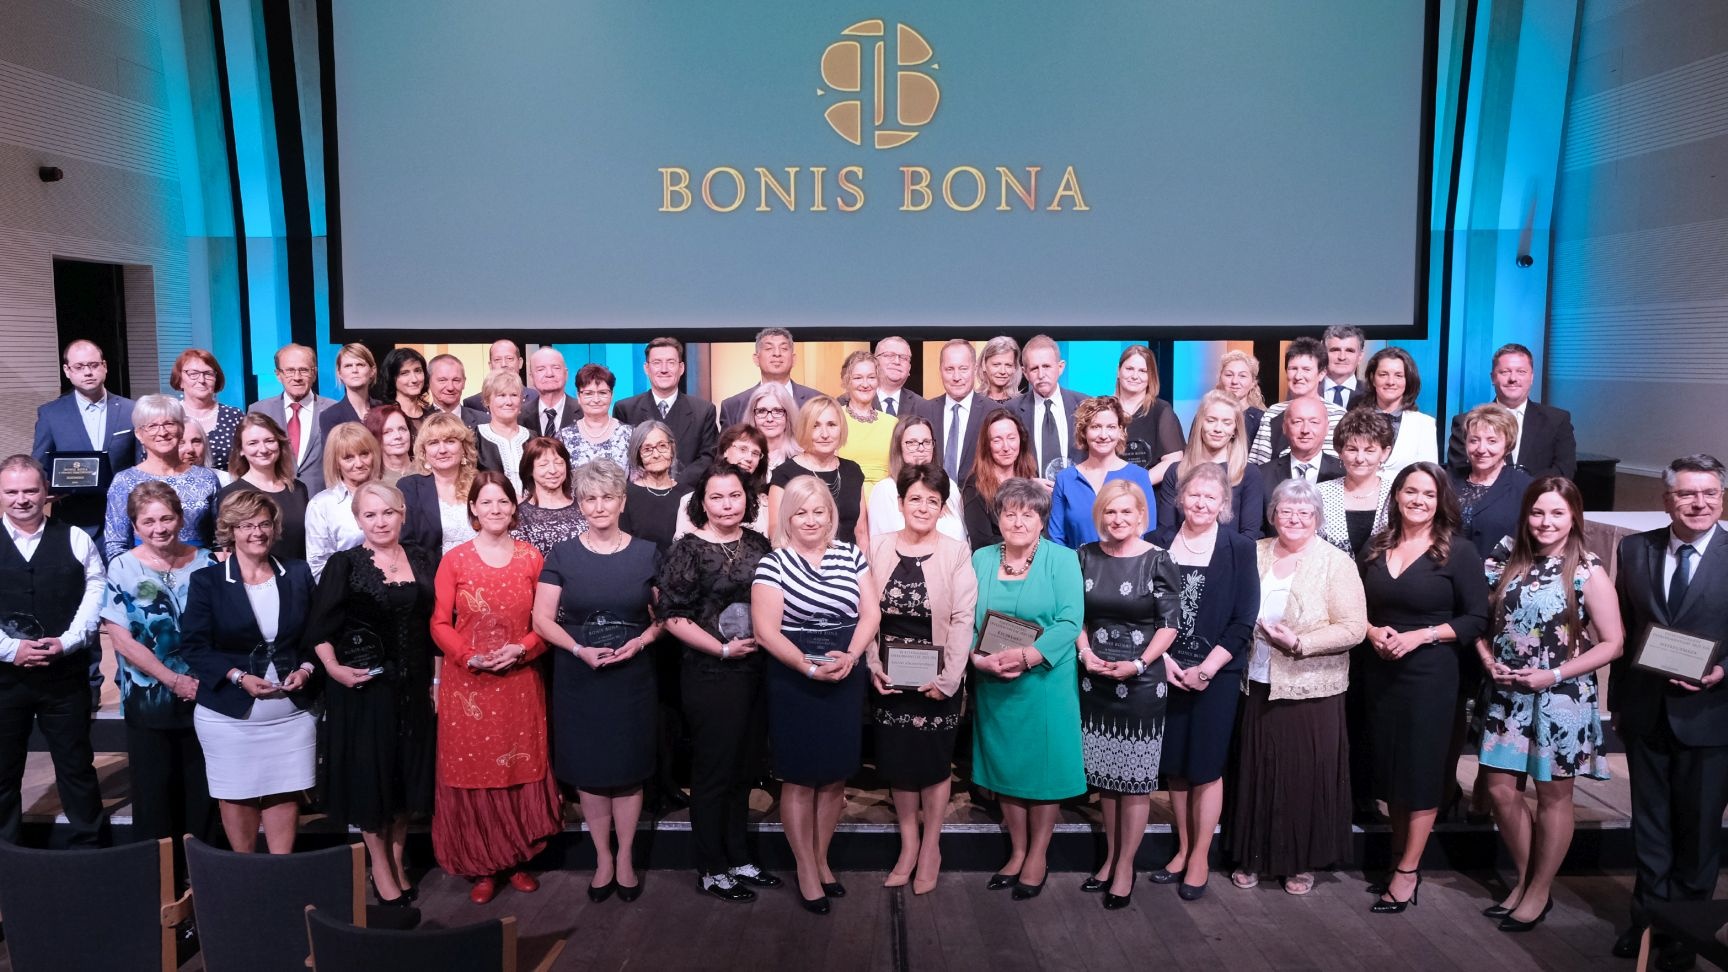 Átadták az idei “Bonis Bona” – A nemzet tehetségeiért díjakat